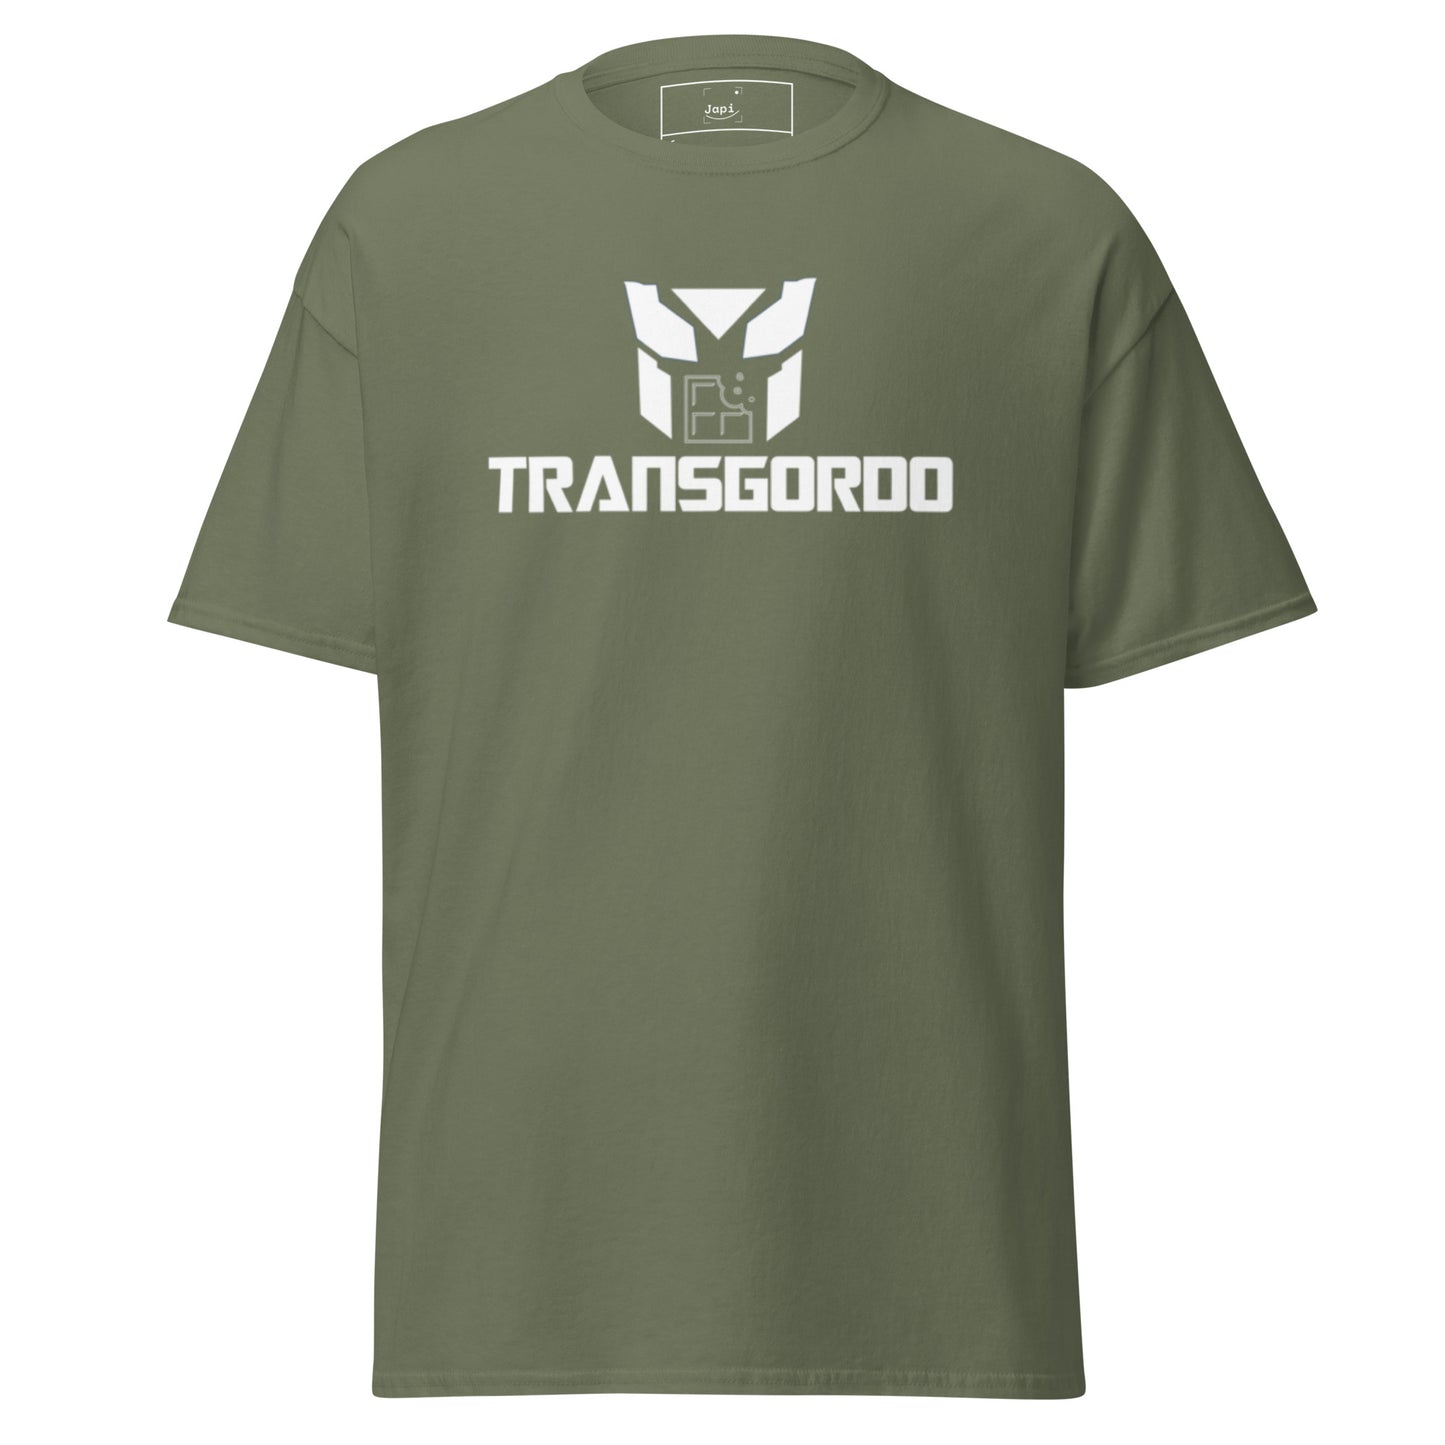 T-shirt "Transgordo"